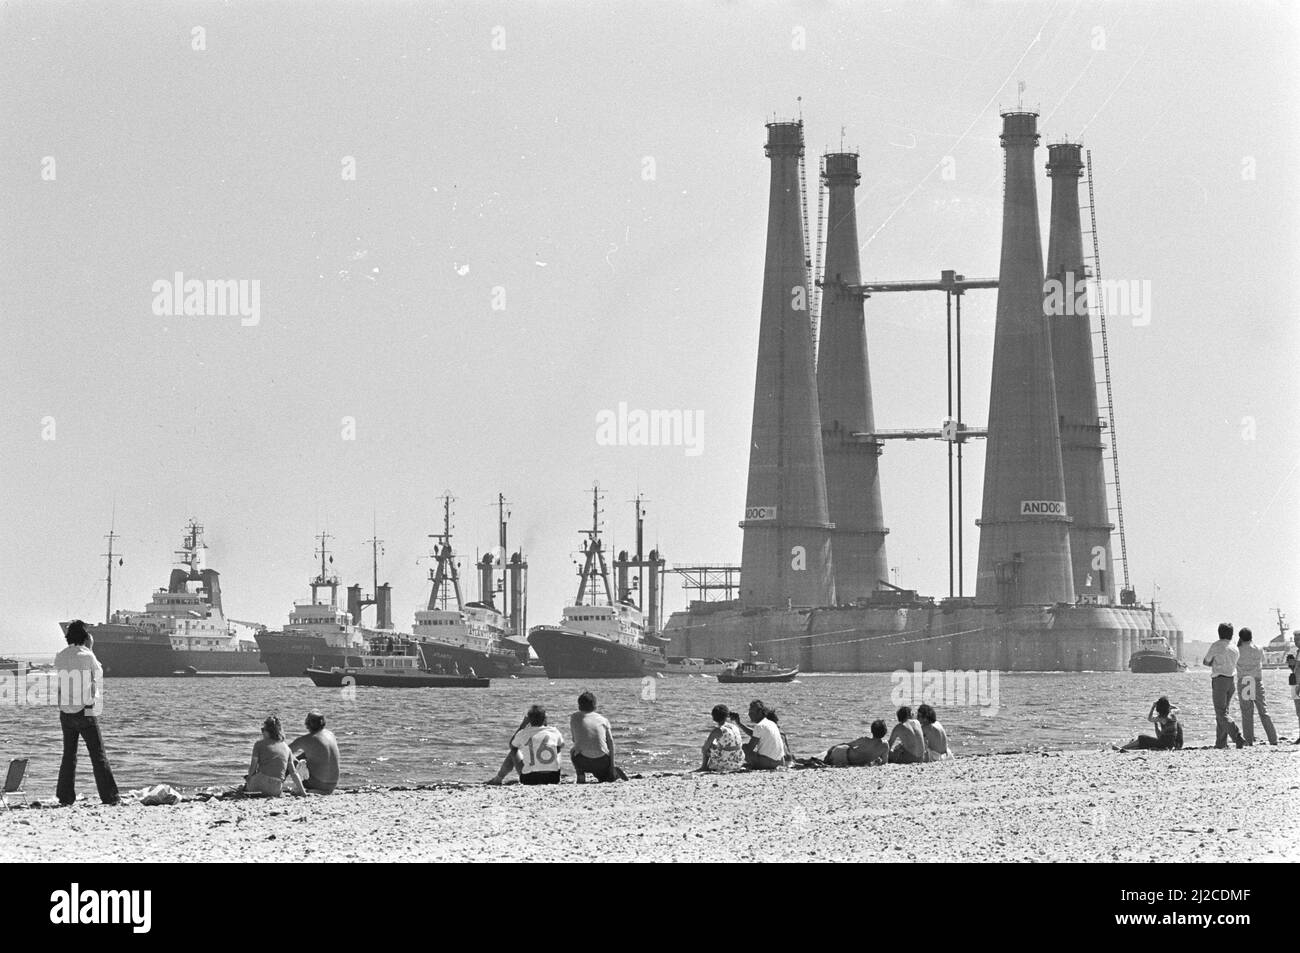 Enorme plataforma de perforación remolcada de Rotterdam a Noruega, el coloso en ruta aprox. 7 de julio de 1976 Foto de stock